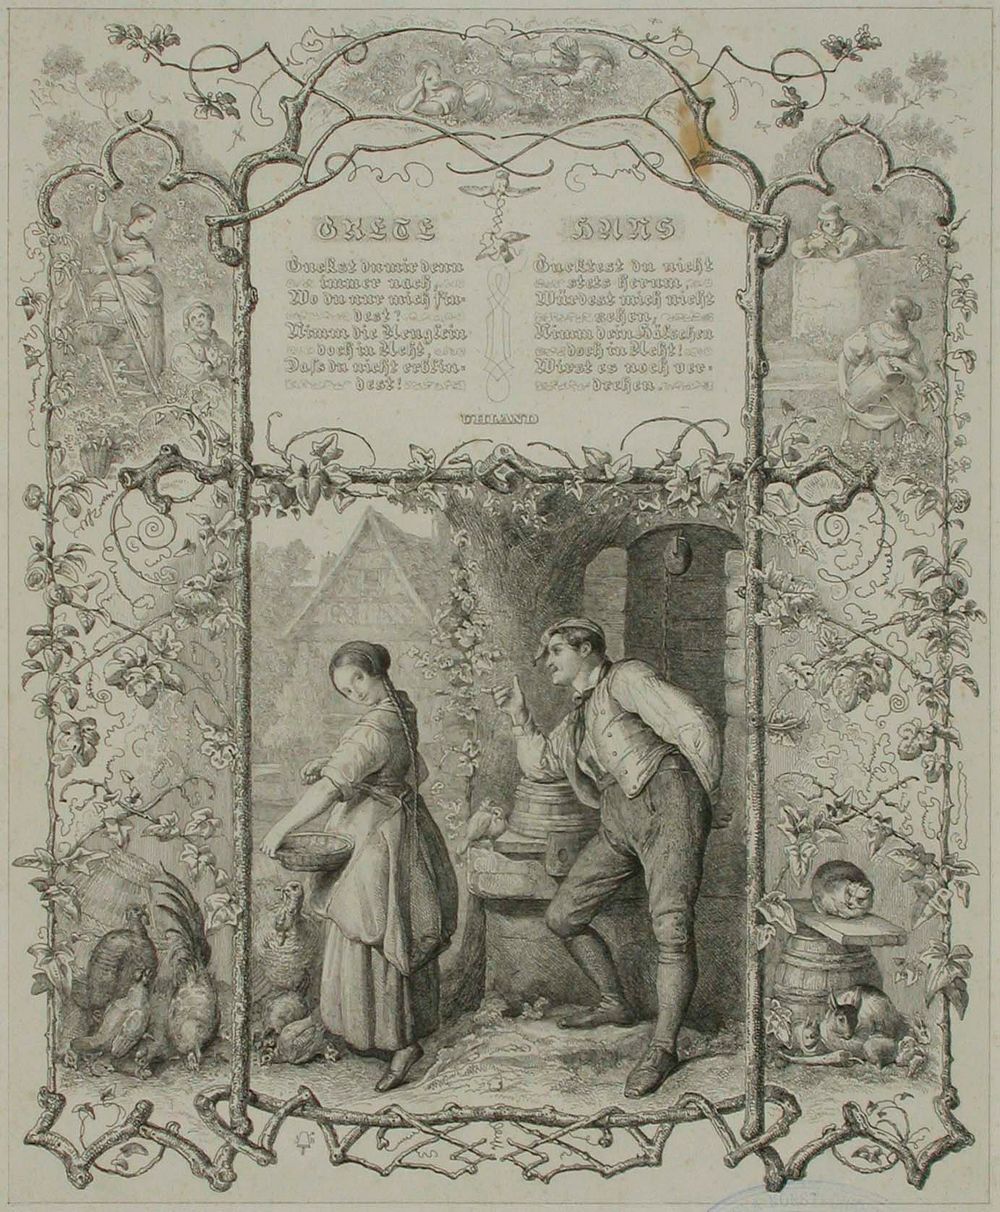 Runokuvitus, grete hans, uhlandin runo, 1838 - 1844